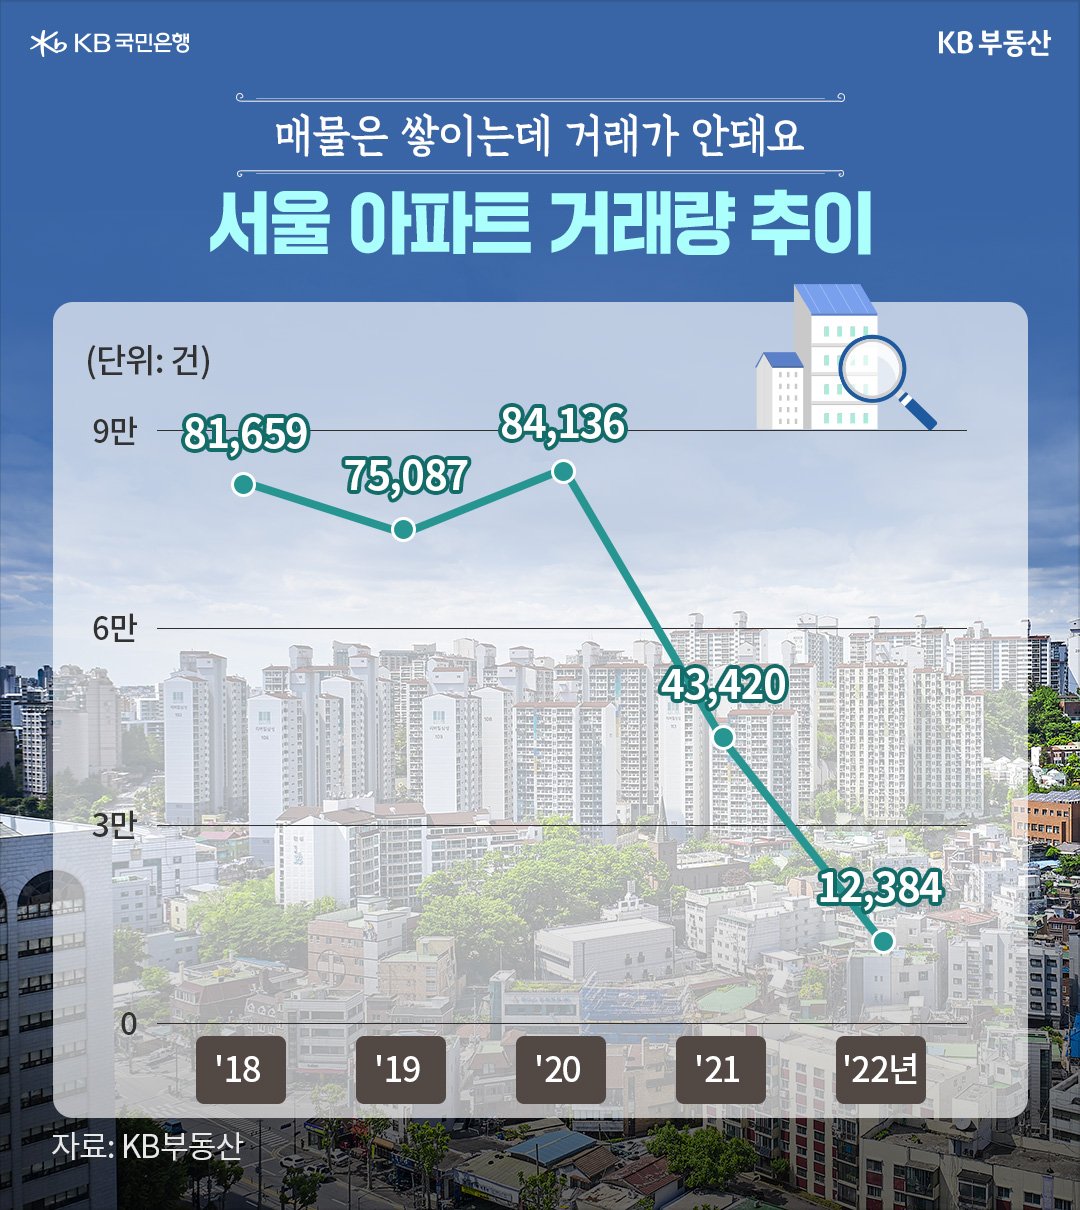 2023년 1월 기준으로 '서울 아파트 거래량 추이'를 나타낸 차트. 작년 한 해 동안 서울에서 거래된 아파트 거래량이 2020년과 2021년의 거래량과 비교해 보면 턱없이 낮은 수치이다. 매물은 쌓이는데 거래가 안 된다.